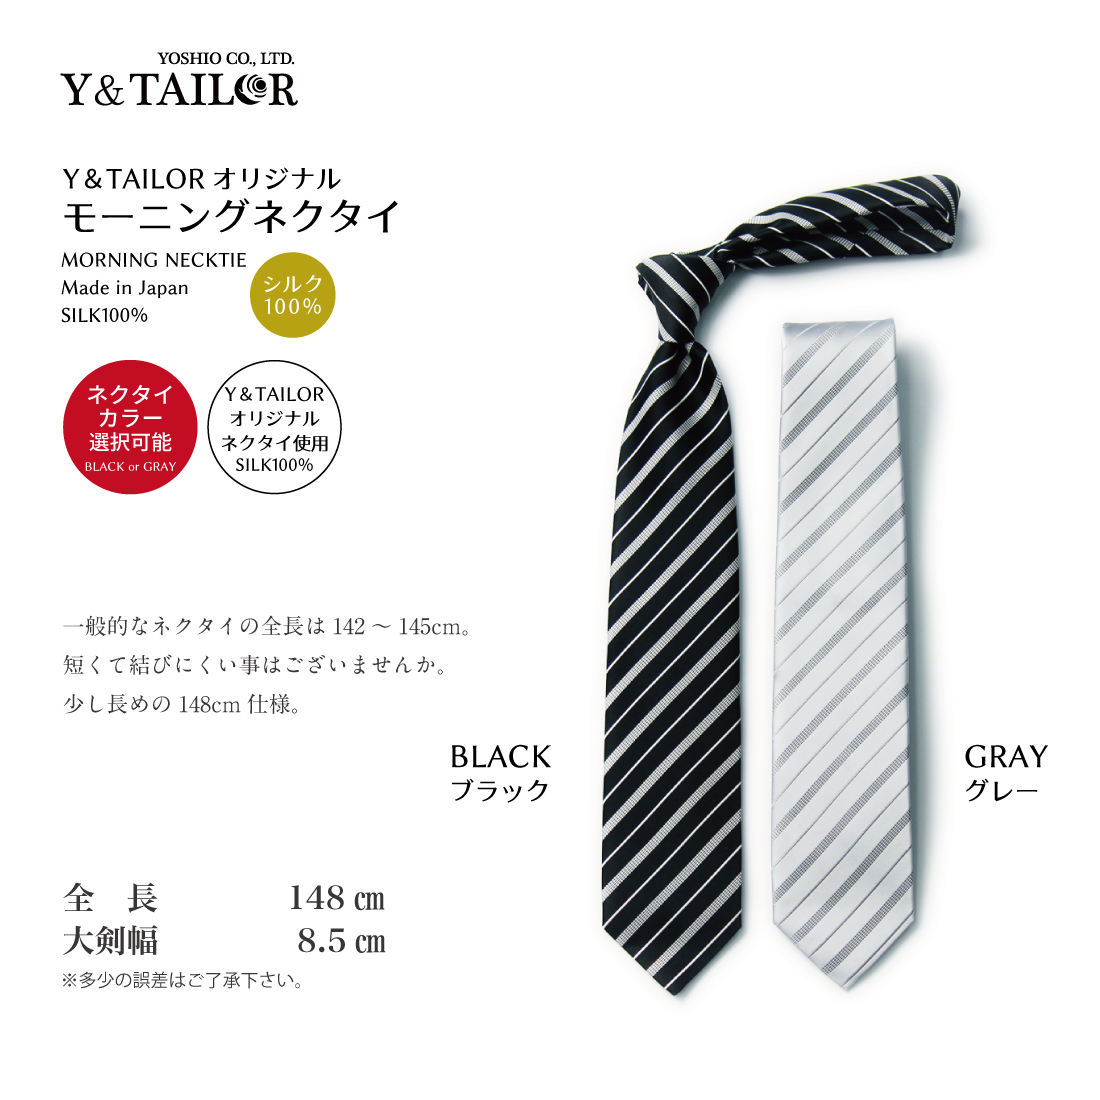 . родители mo- человек g комплект галстук шелк 100% мелкие вещи Wing цвет рубашка можно выбрать 6 позиций комплект kospa[C-5G]